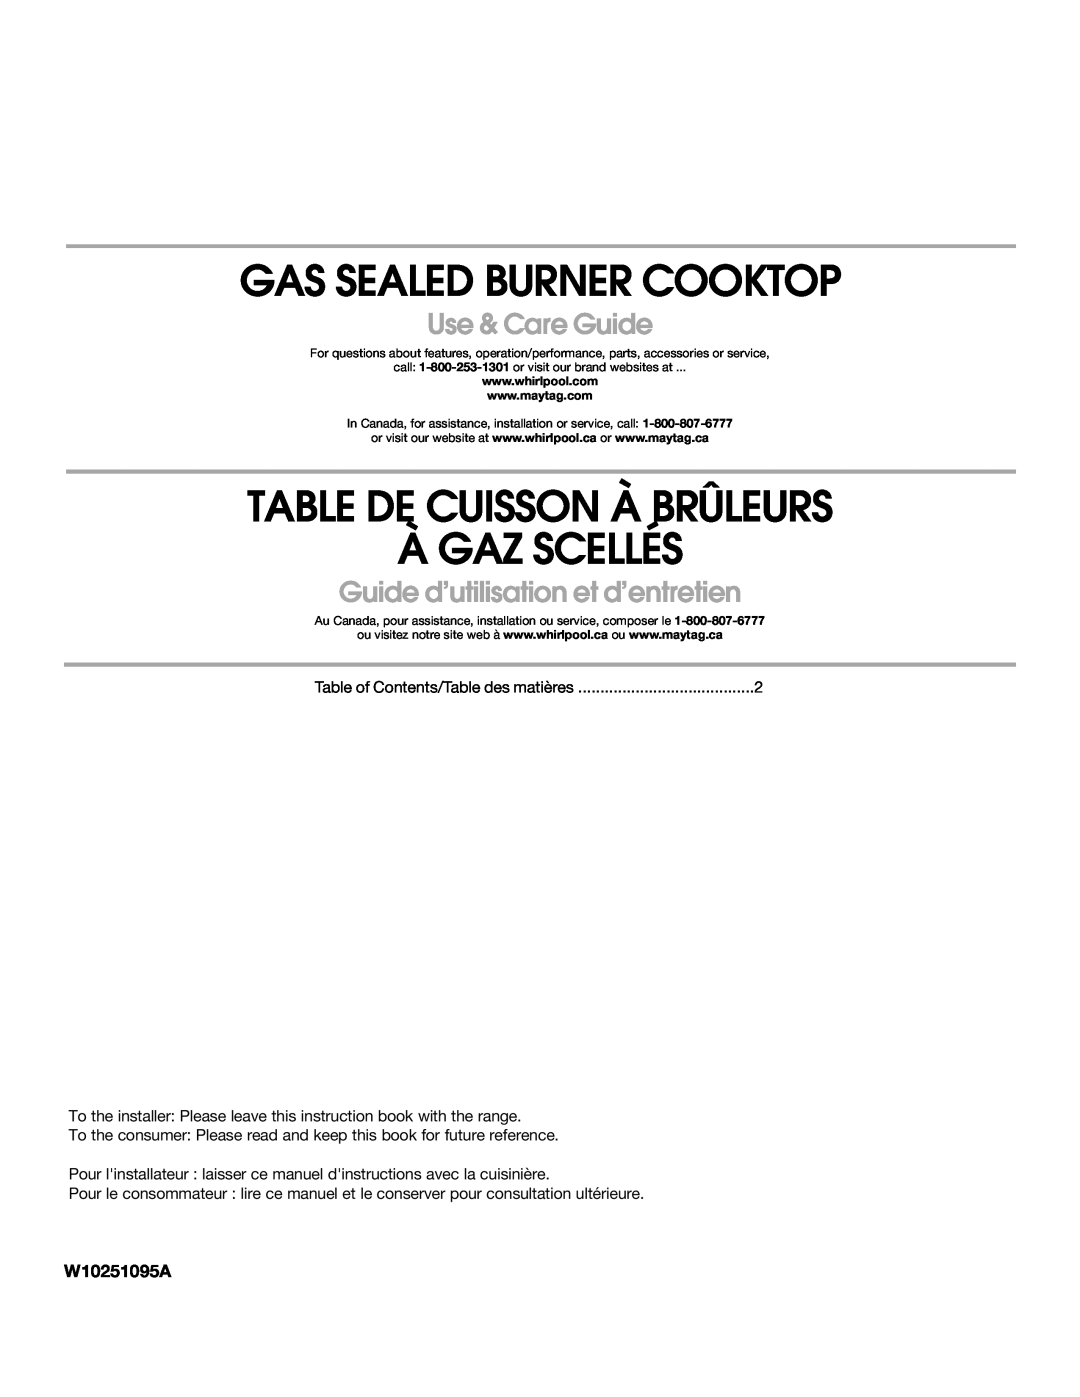 Maytag MGC8636WS manual Gas Sealed Burner Cooktop, Table De Cuisson À Brûleurs À Gaz Scellés, Use & Care Guide, W10251095A 